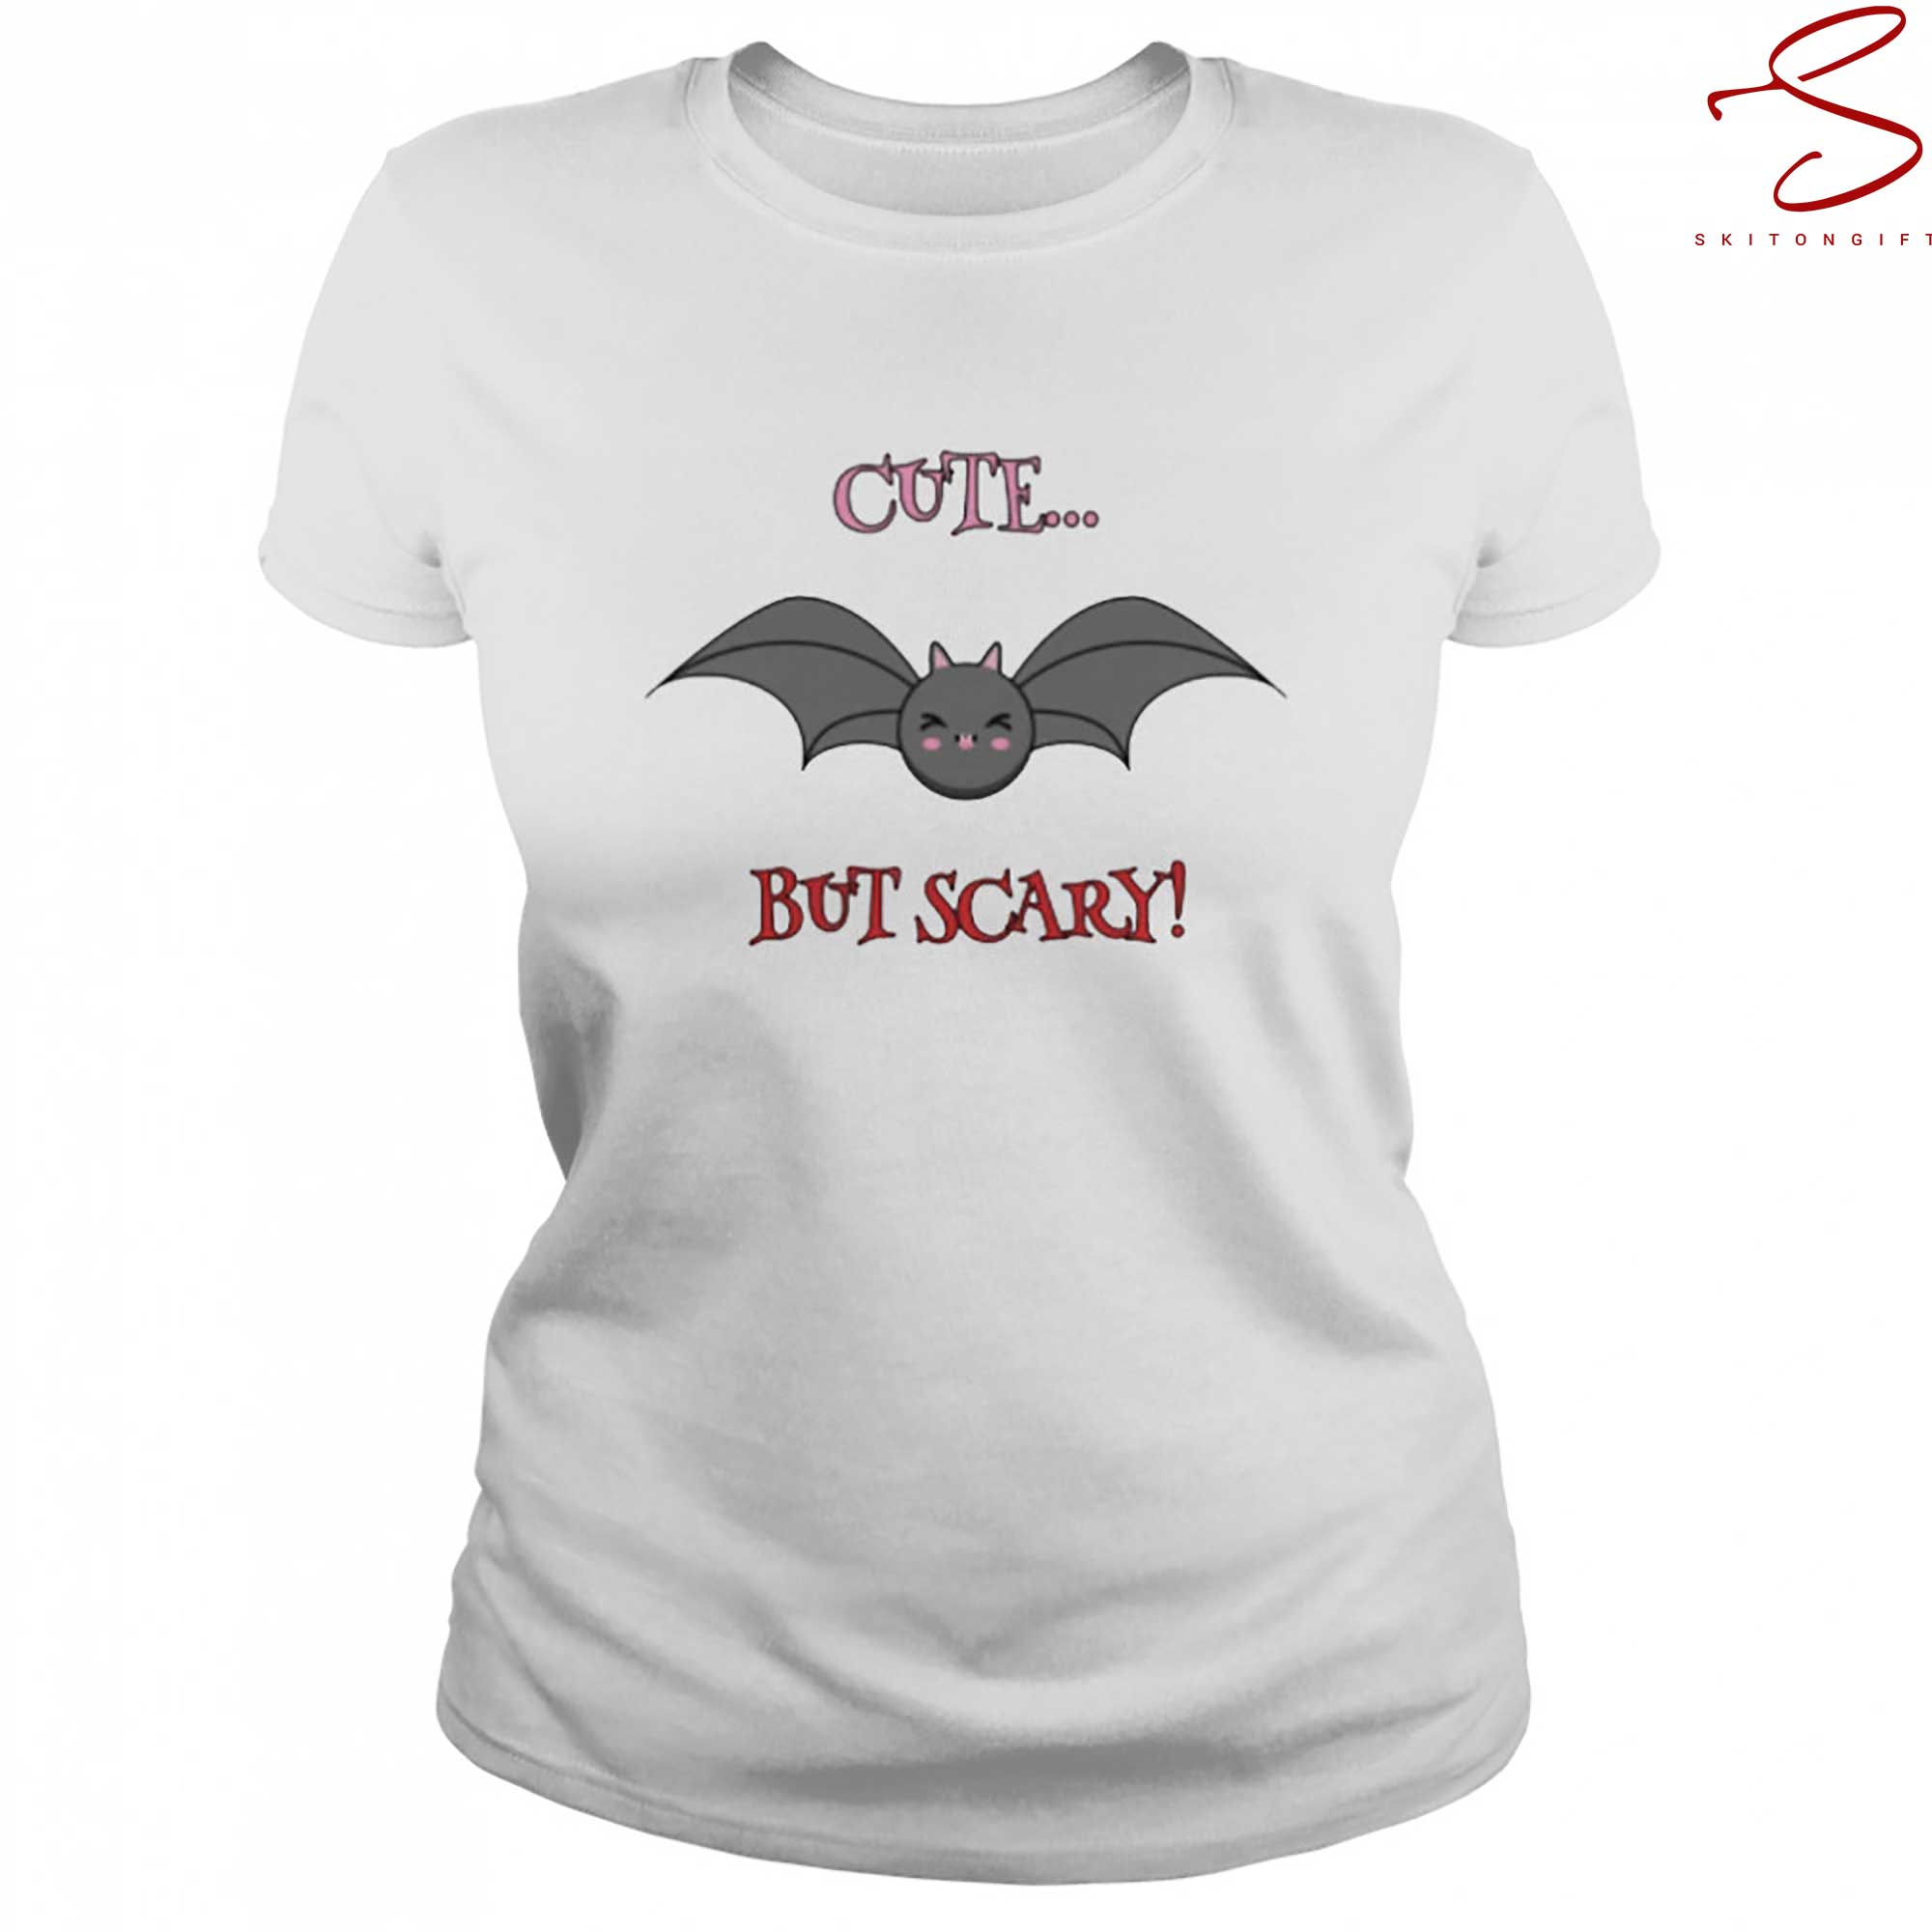 Skitongift Cute But Scary Bat T Shirt